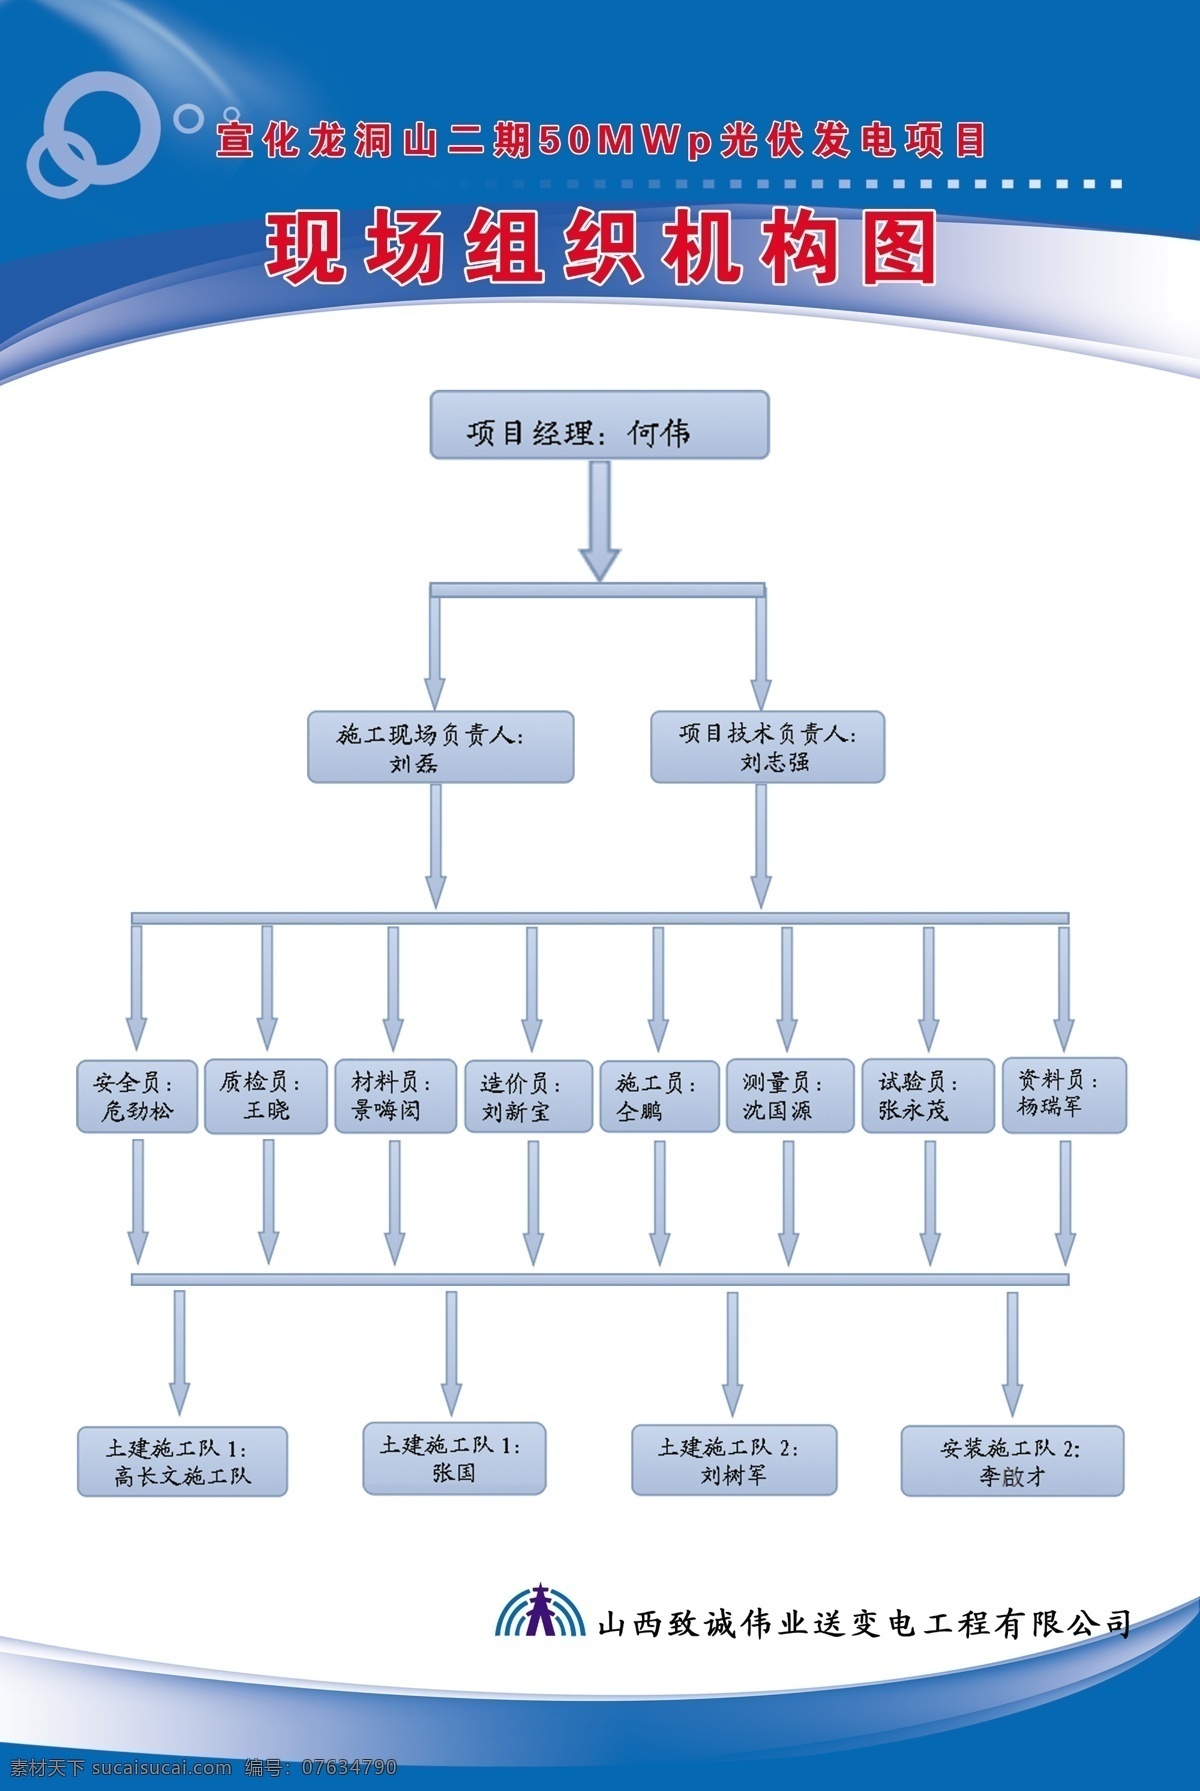 现场 组织机构 图 现场组织机构 组织机构表 展板 模板 蓝色展板 分层